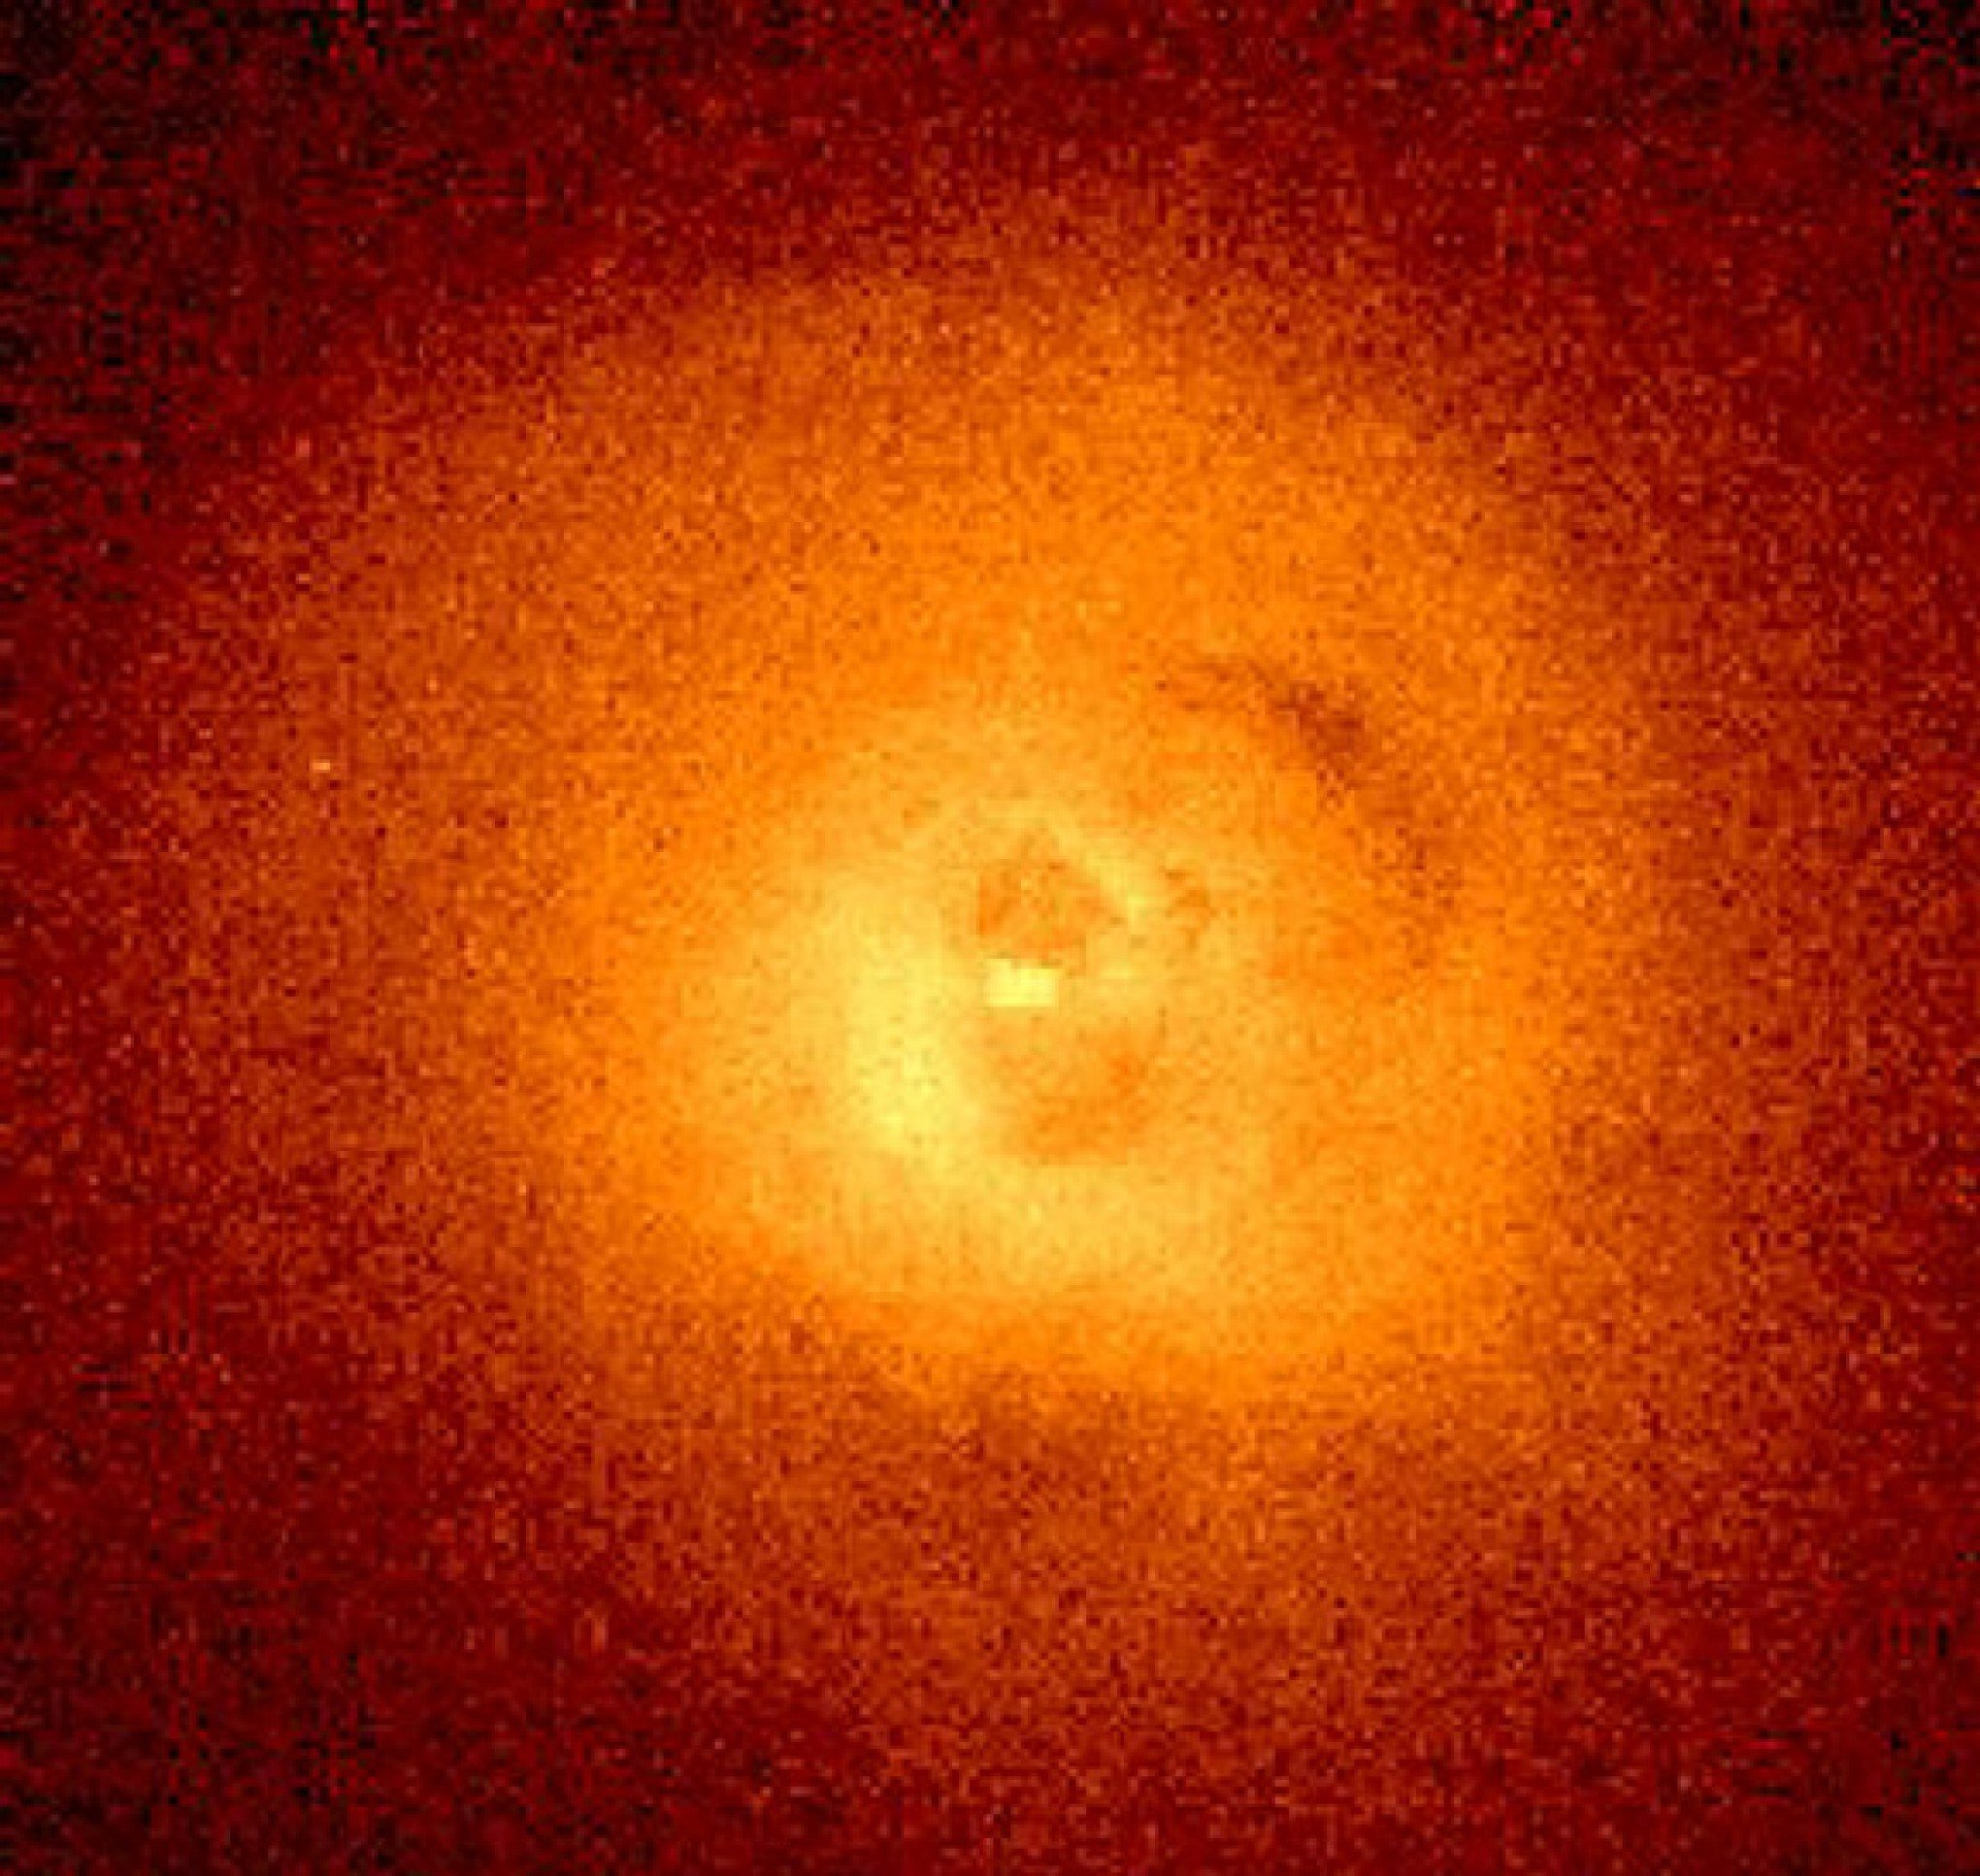 NASA publica imagem do aglomerado de galáxias de Perseus e aparência de caveira "sinistra" intriga; veja